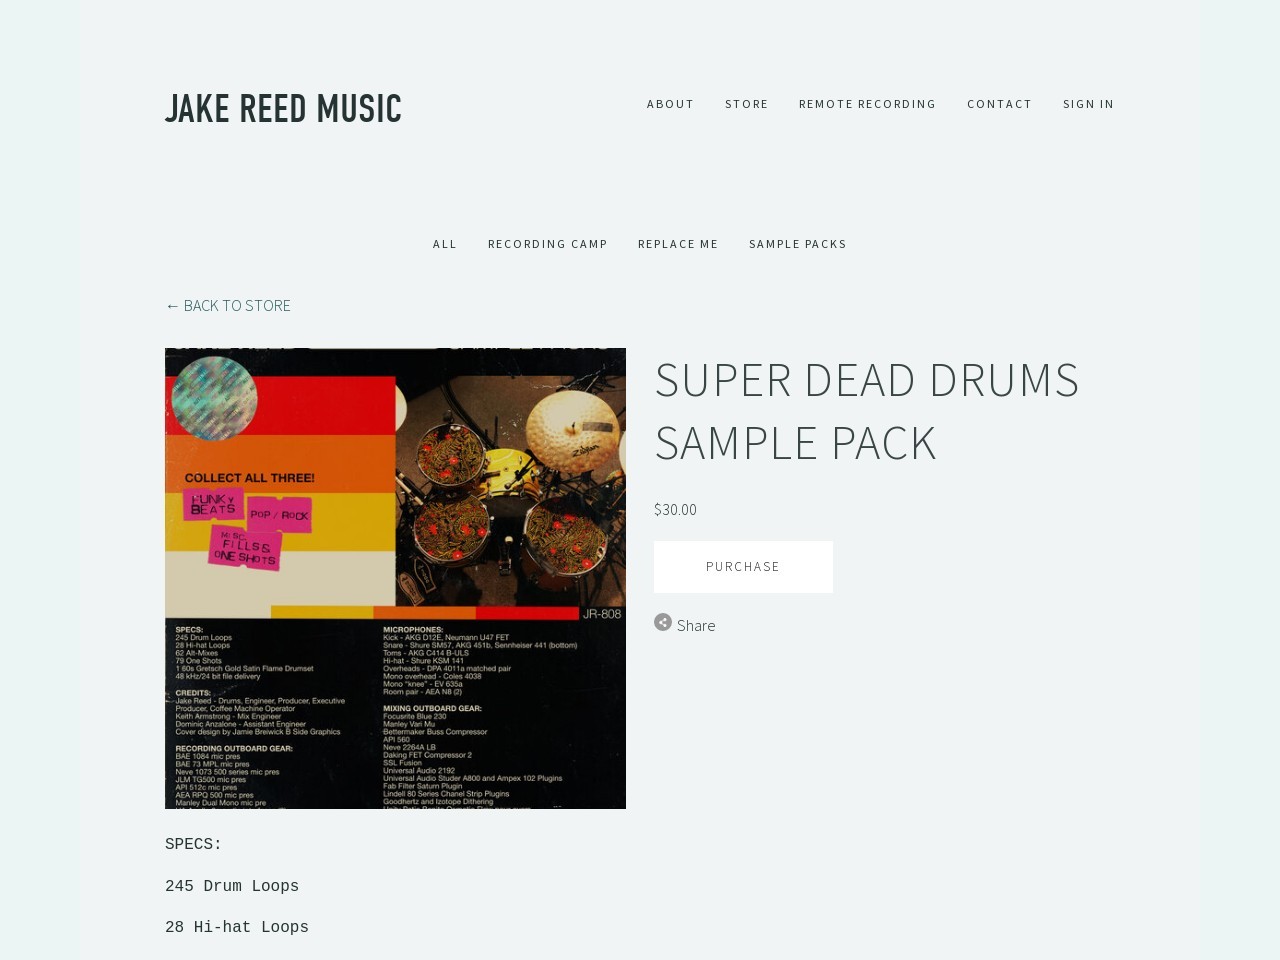 SUPER DEAD DRUMS SAMPLE PACK — Jake Reed Music